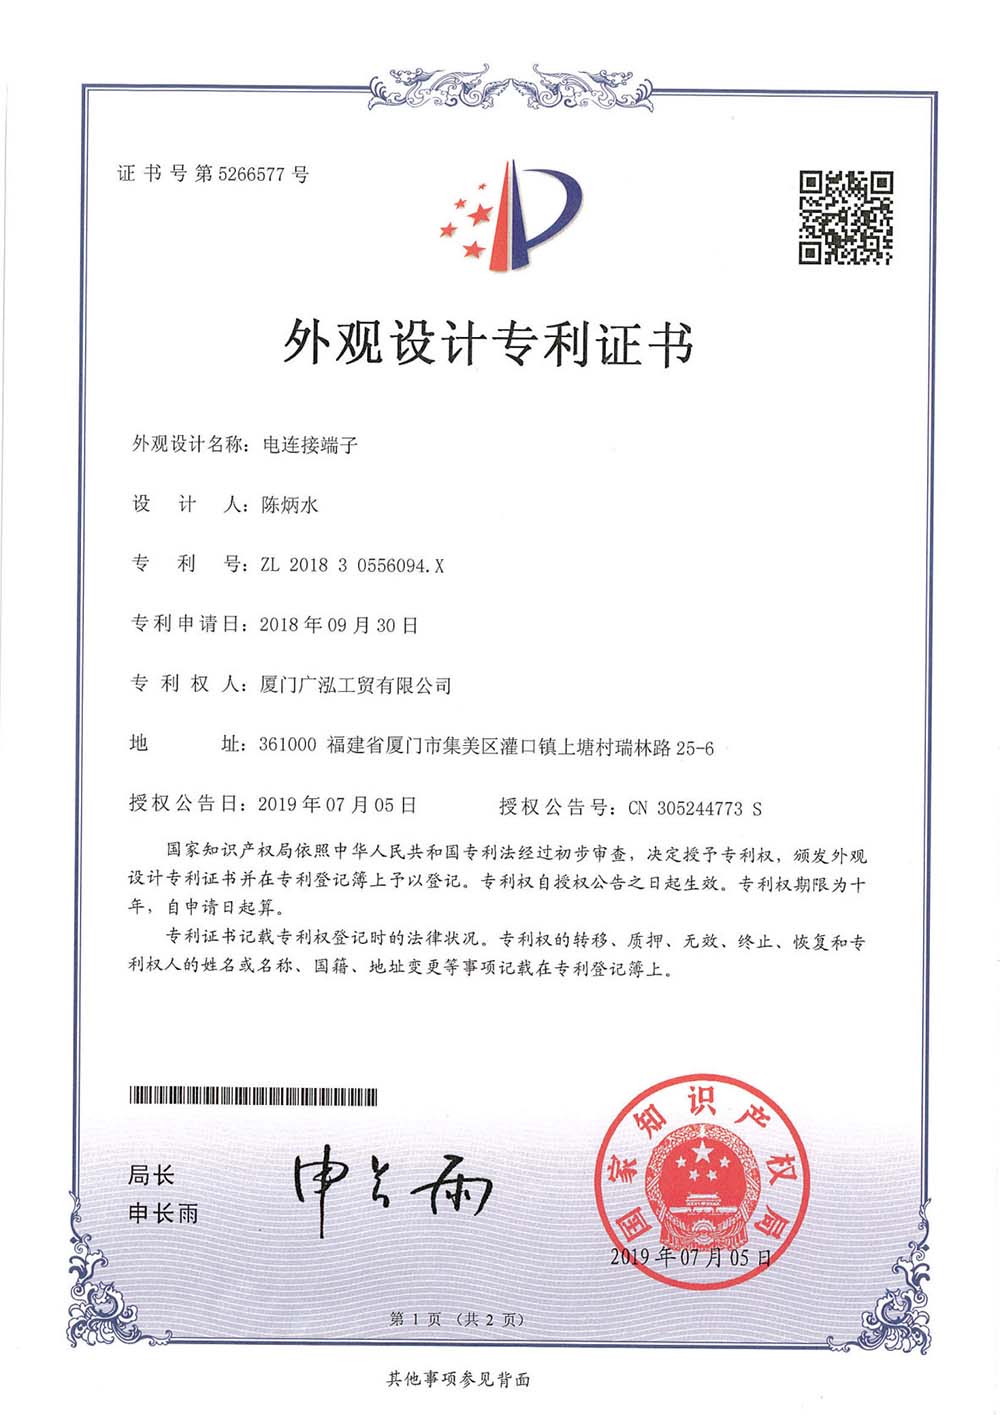 Çin Elektrik Bağlantı Terminali 201830556094.X Görünüm Tasarım Patenti